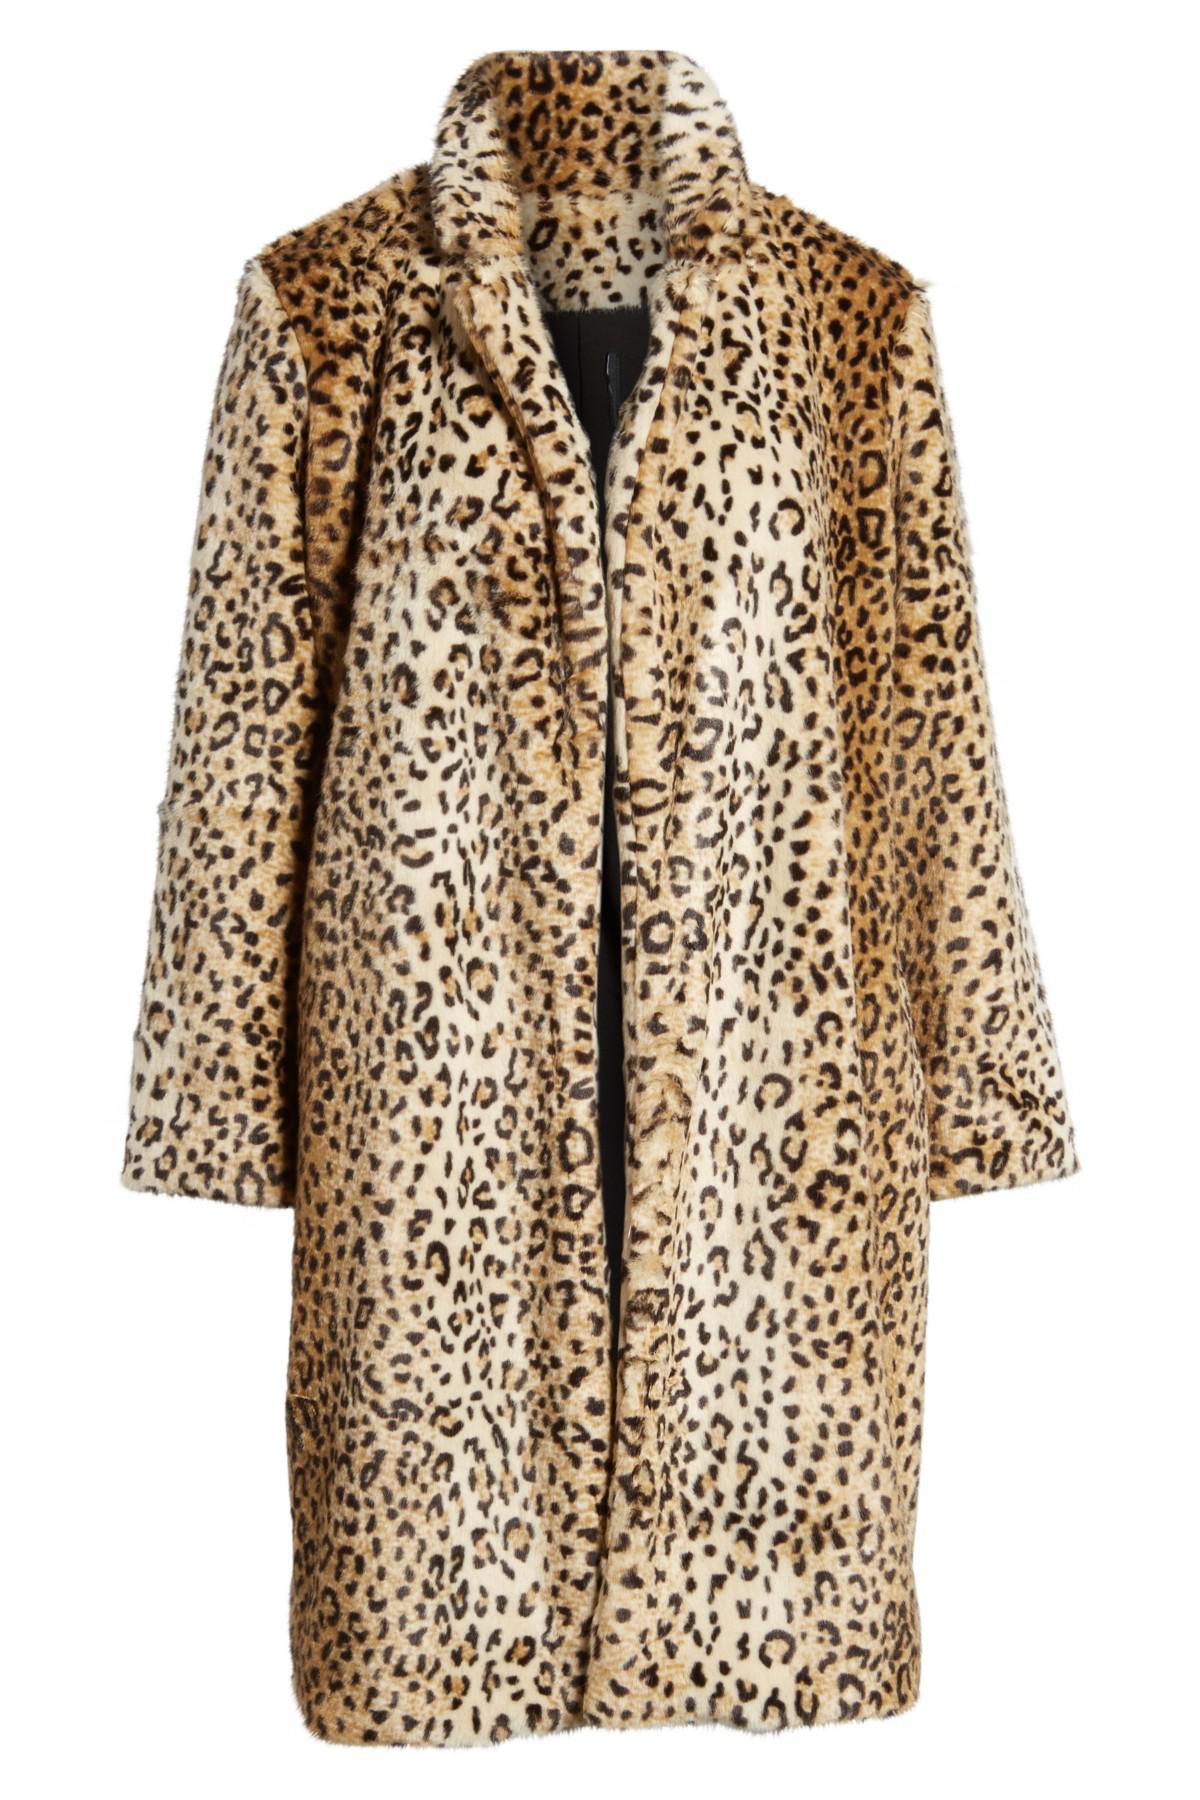 Chelsea28 Leopard Print Faux Fur Jacket in Tan Leopard Print (Brown) - Lyst